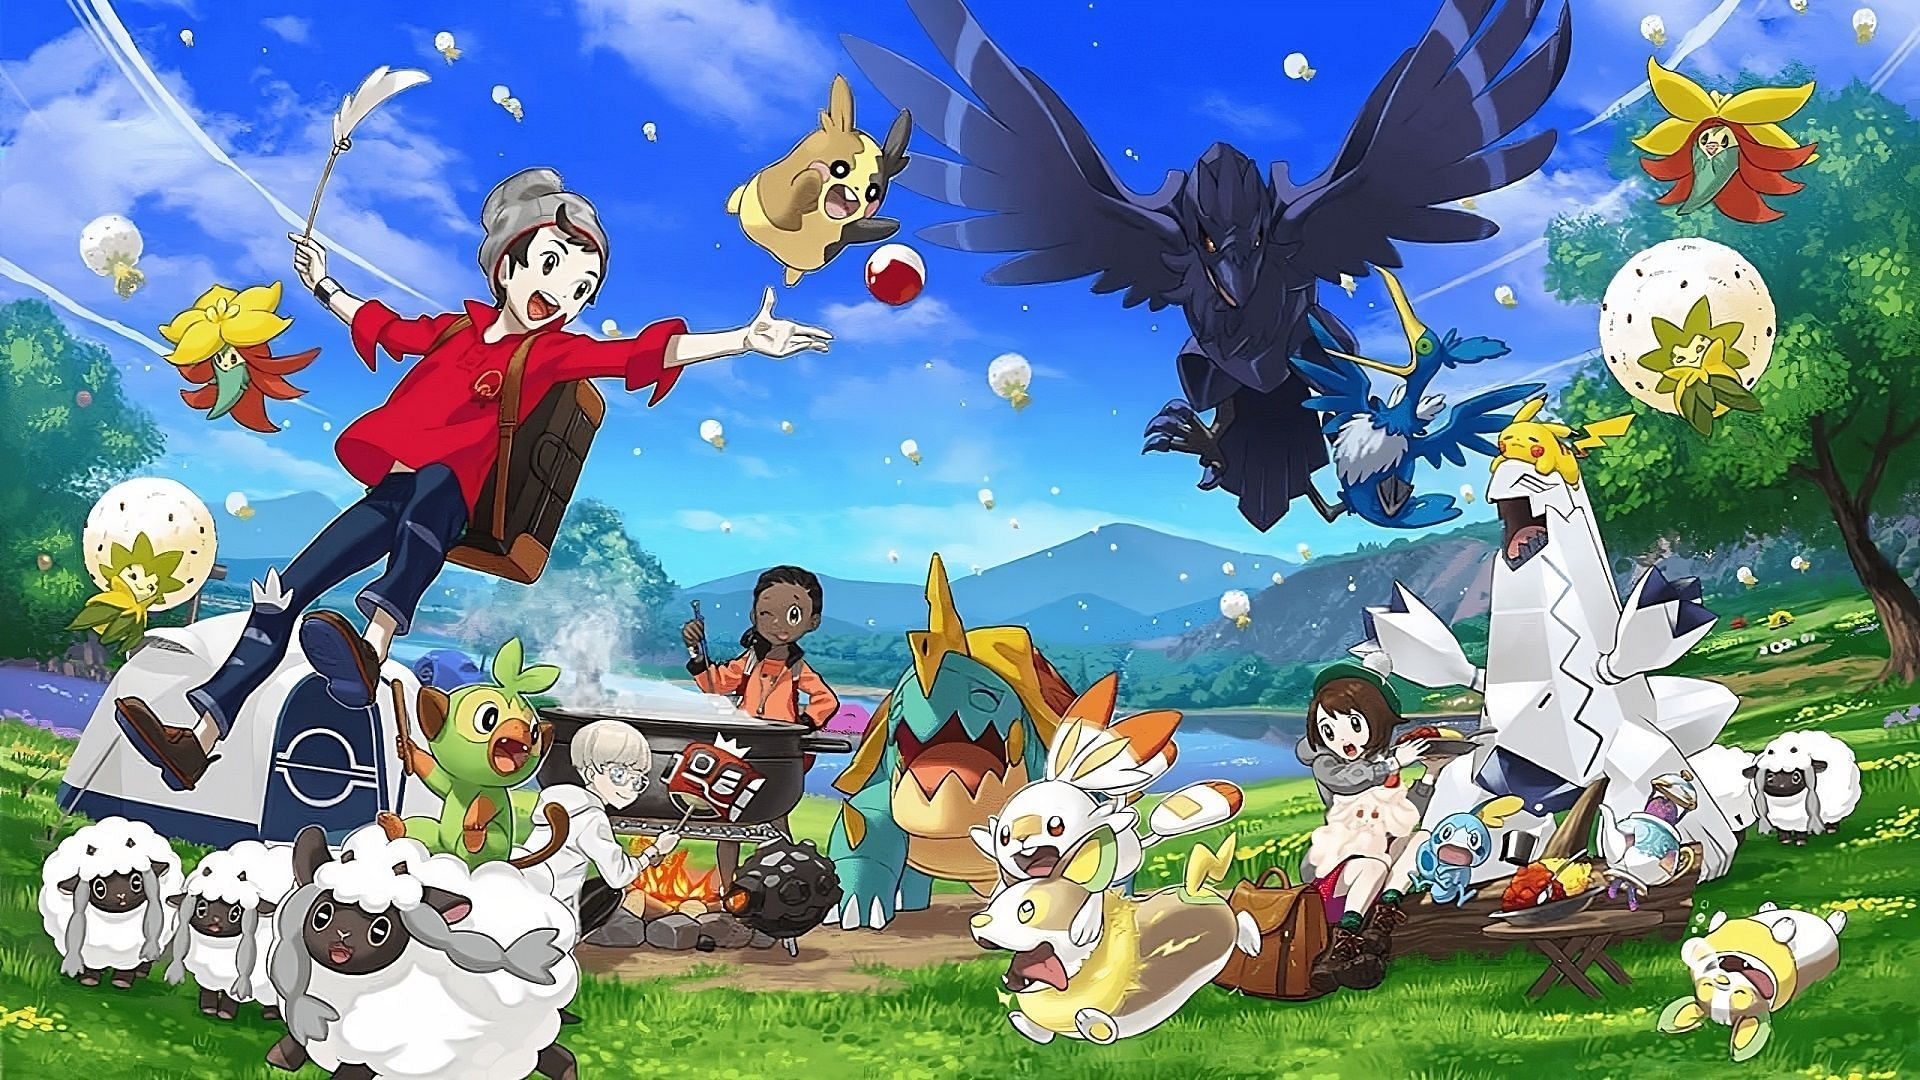 Pokémon Go Gen 8 Zamazenta!~ Unregistered ok　!~Reliable service~